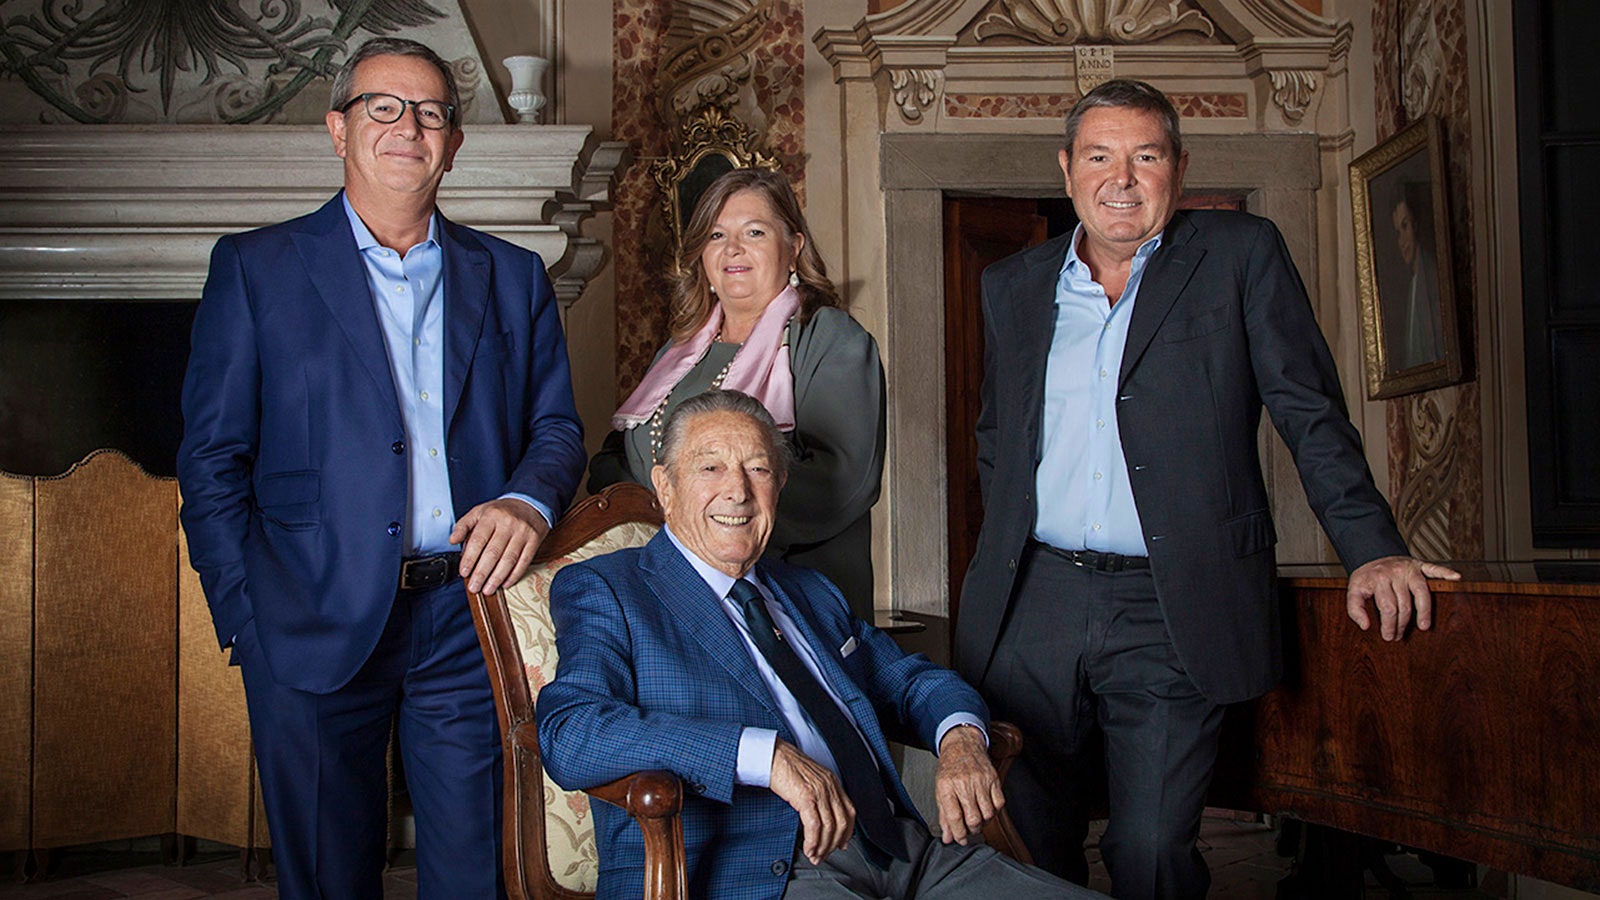   Franco Ziliani versammelt sich im Sitzen mit seinen Kindern – Arturo, links, Cristina und Paolo – die jetzt die Sektkellerei führen, die er mitbegründet hat.